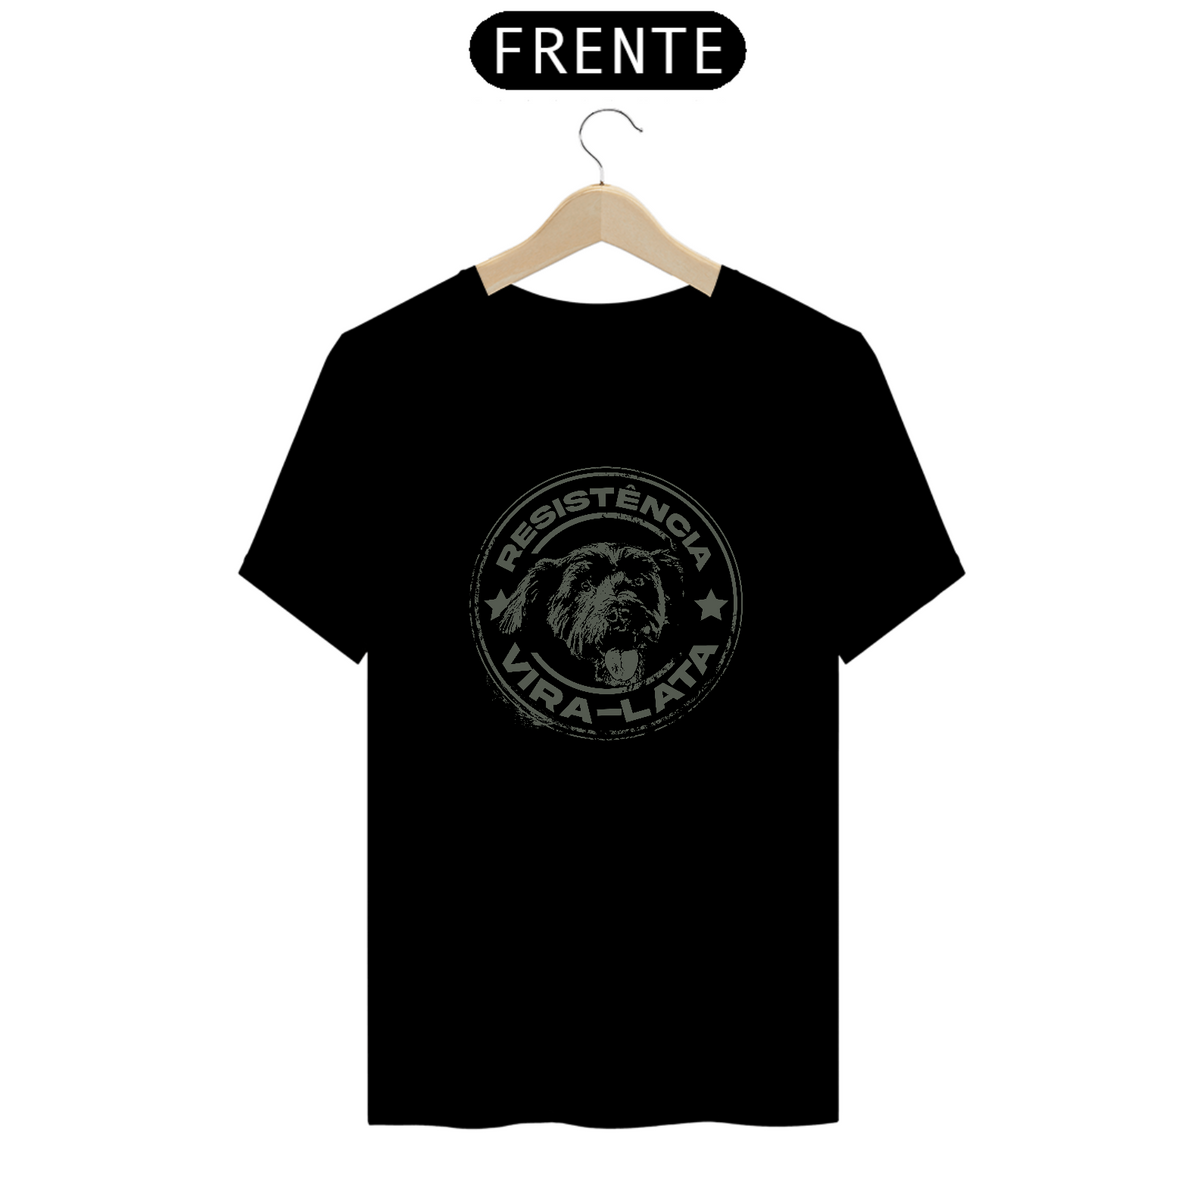 Nome do produto: T shirt Quality Resistencia stoned